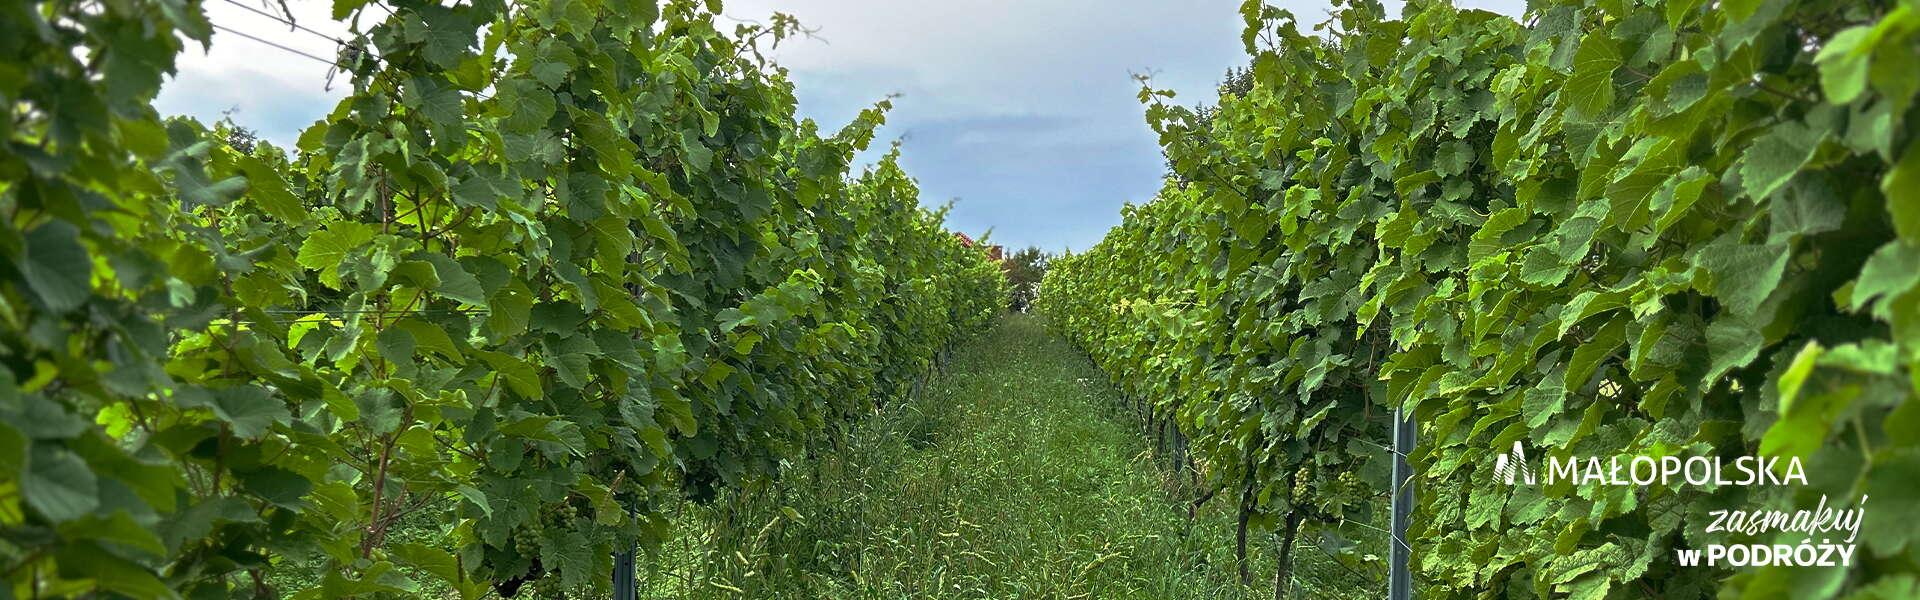 Aleja w winnicy - zielone krzewy winorośli po obu stronach ścieżki, w prawym dolnym rogu logo Małopolski i napis Zasmakuj w podróży